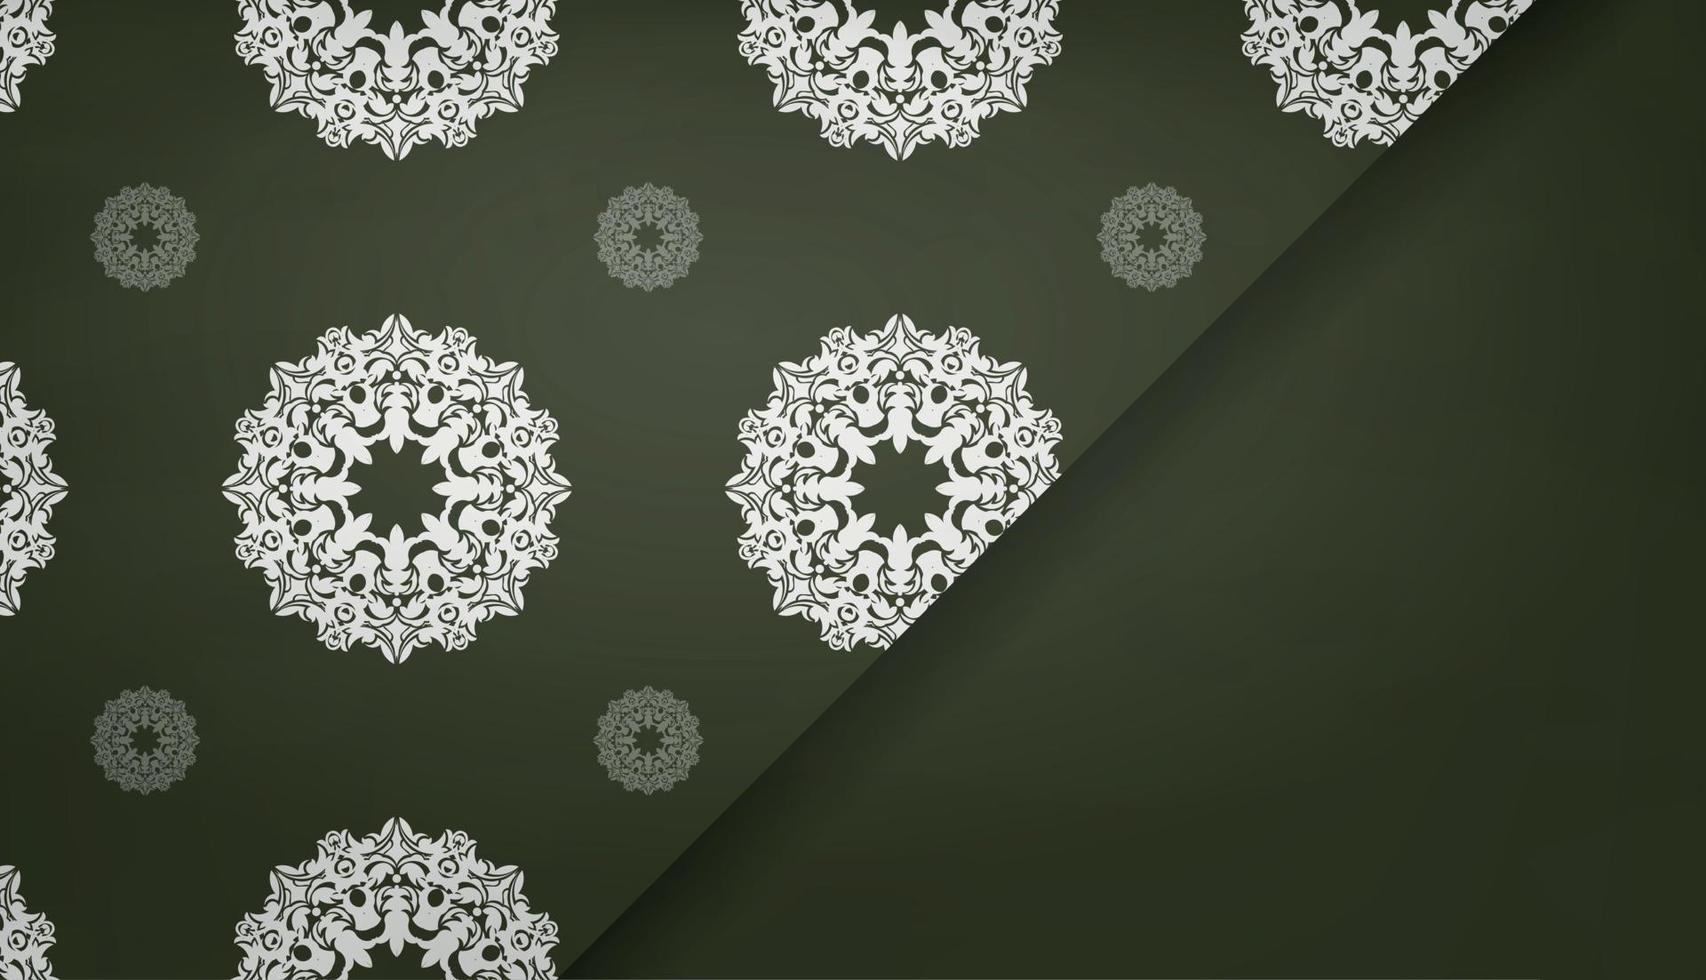 banner verde escuro com ornamento branco vintage para design sob seu logotipo ou texto vetor